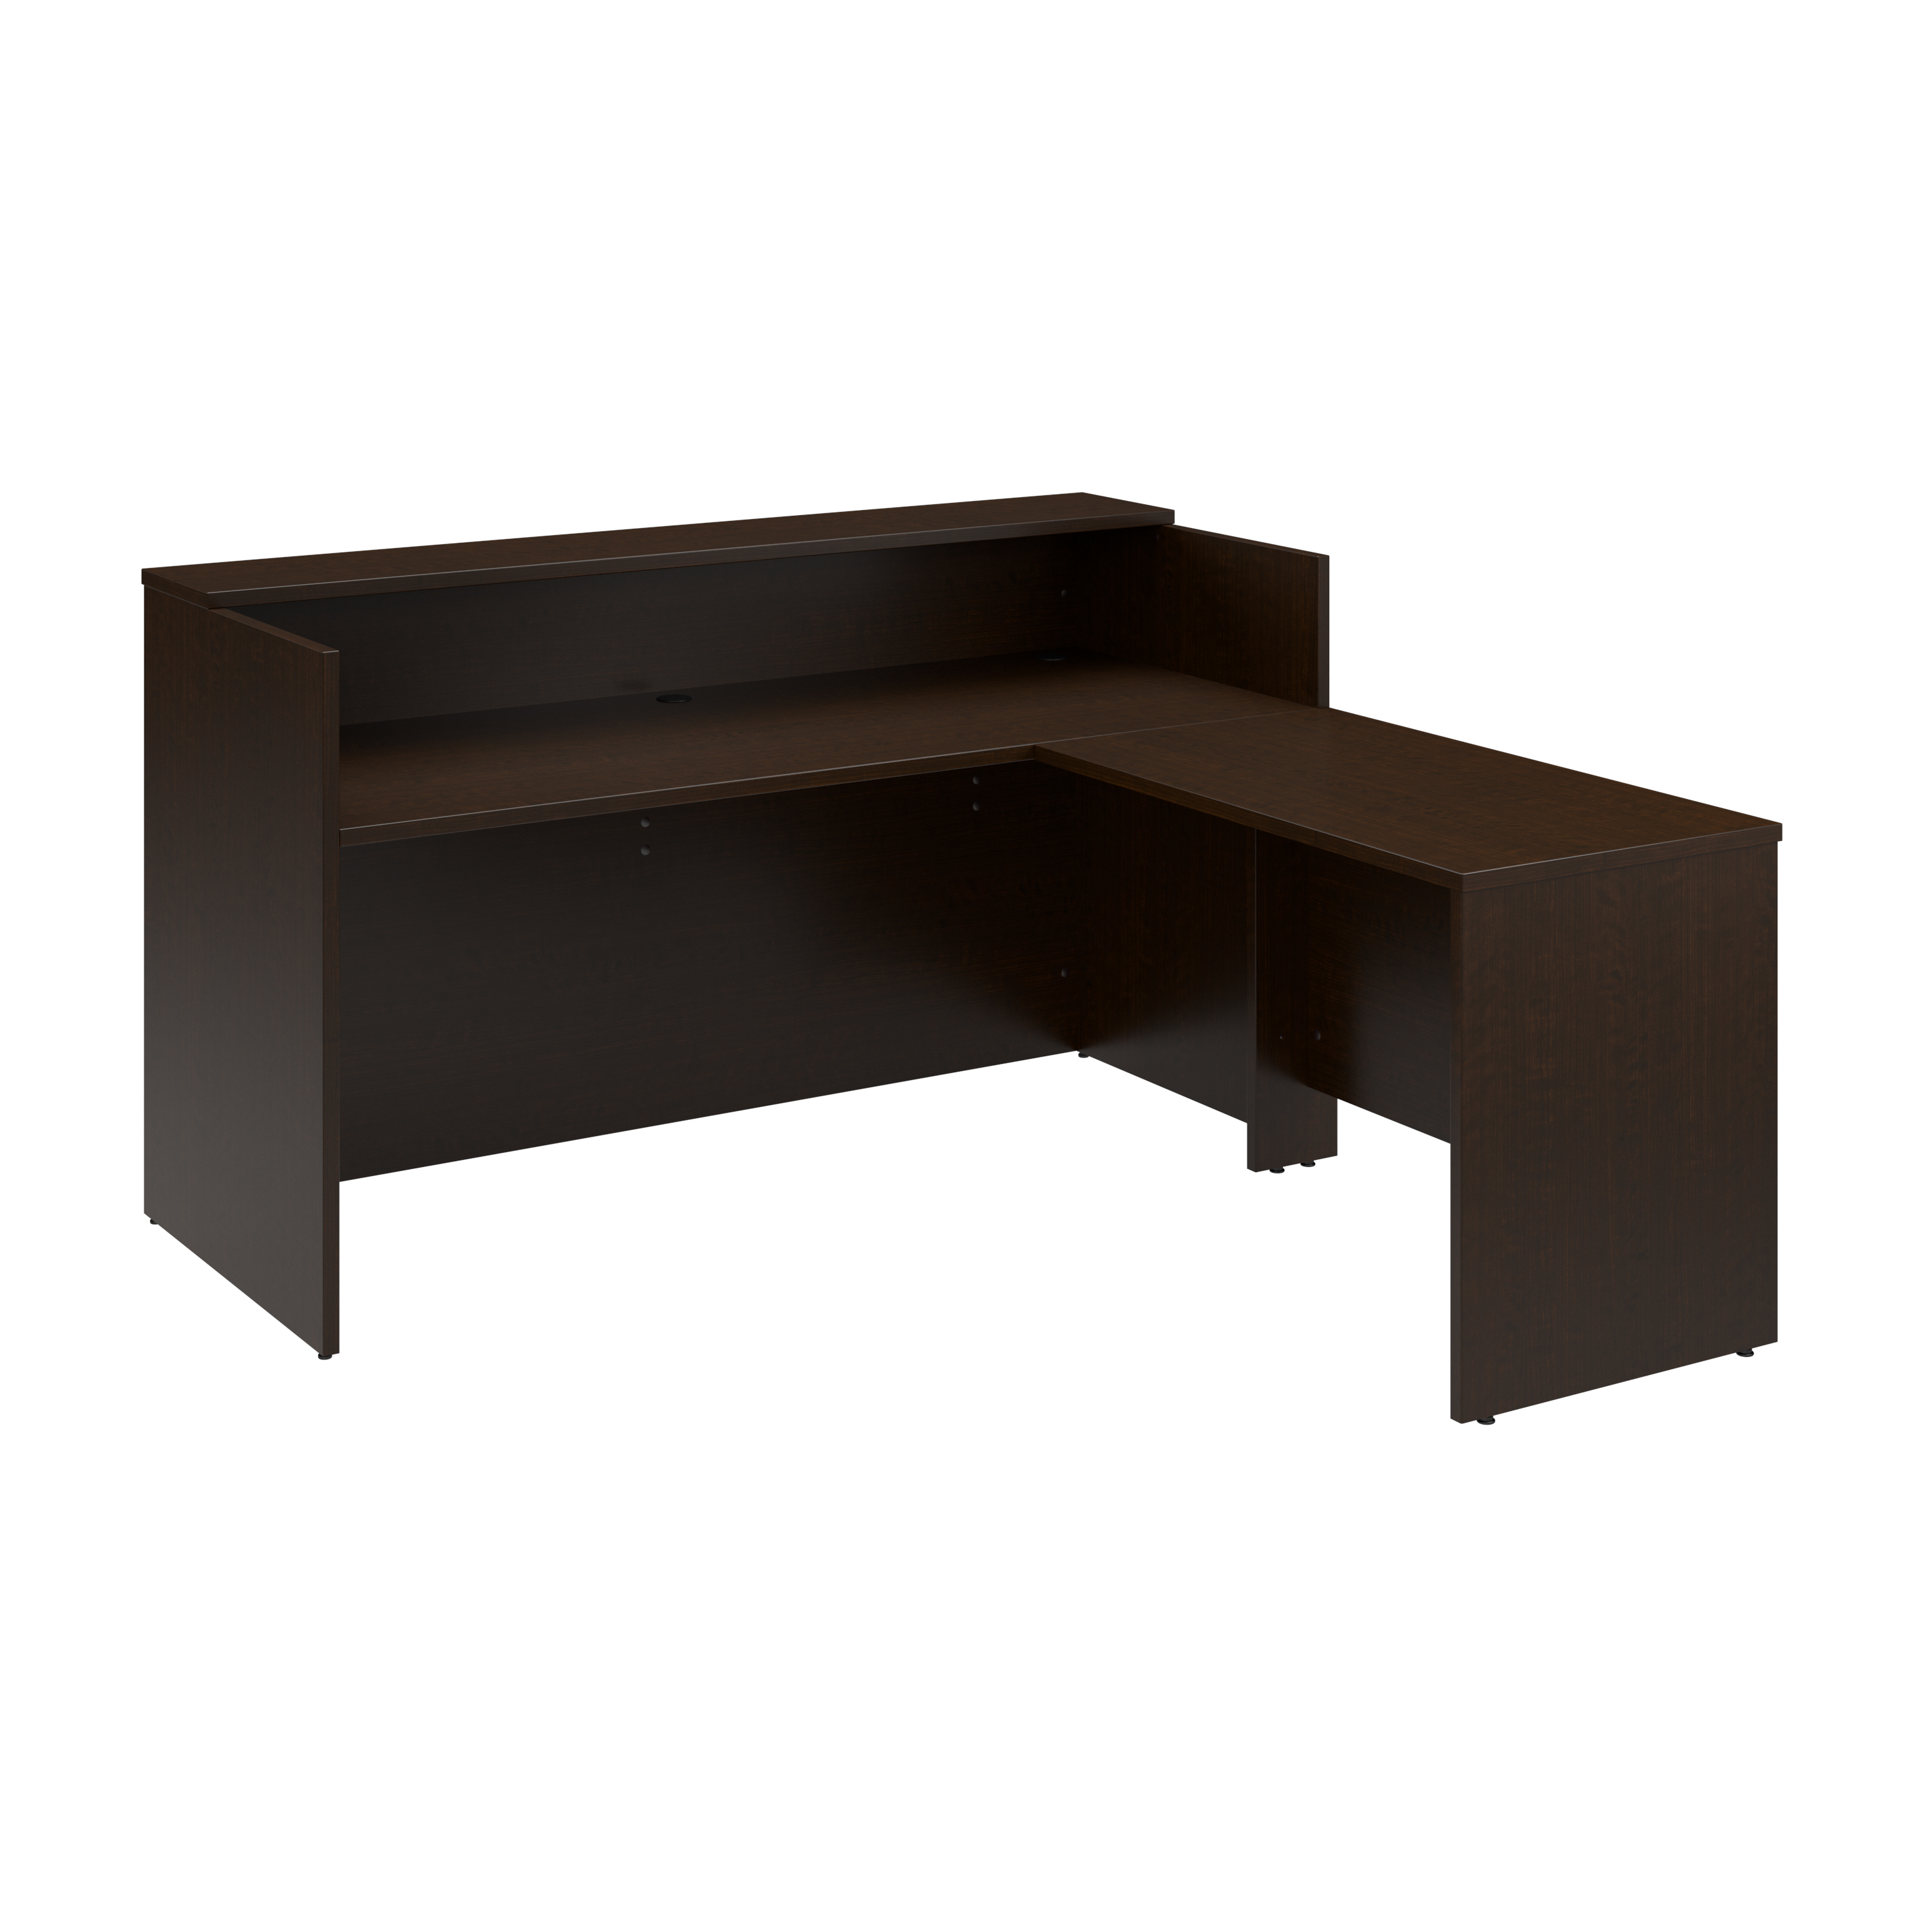 Shop Bush Business Furniture Arrive 72W x 72D L Shaped Reception Desk with Shelf 02 ARV006MR #color_mocha cherry